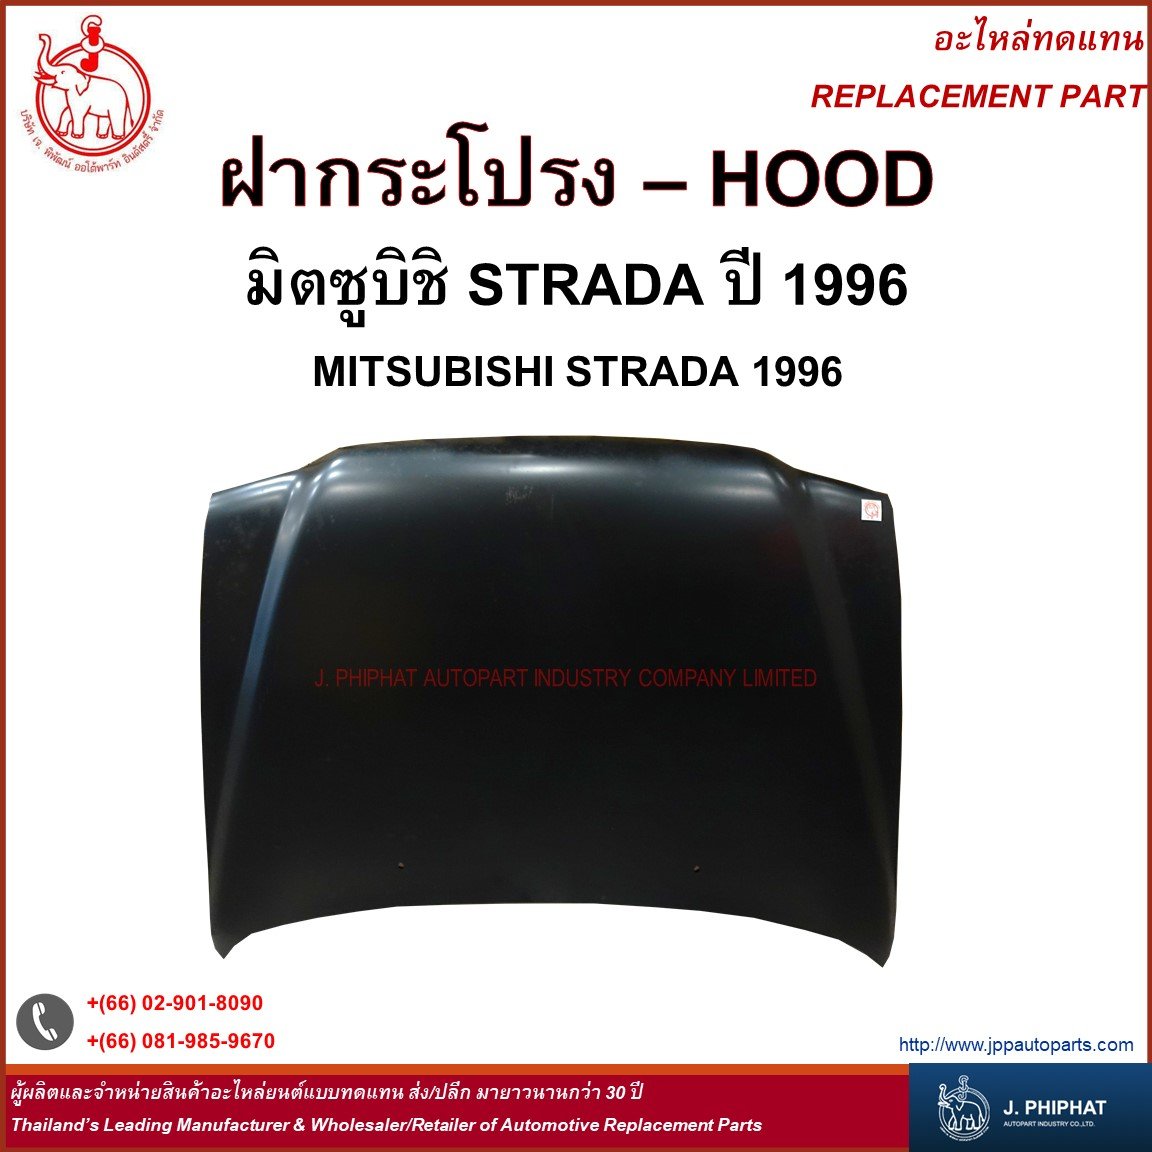 Hood - Mitsubishi Strada 1996